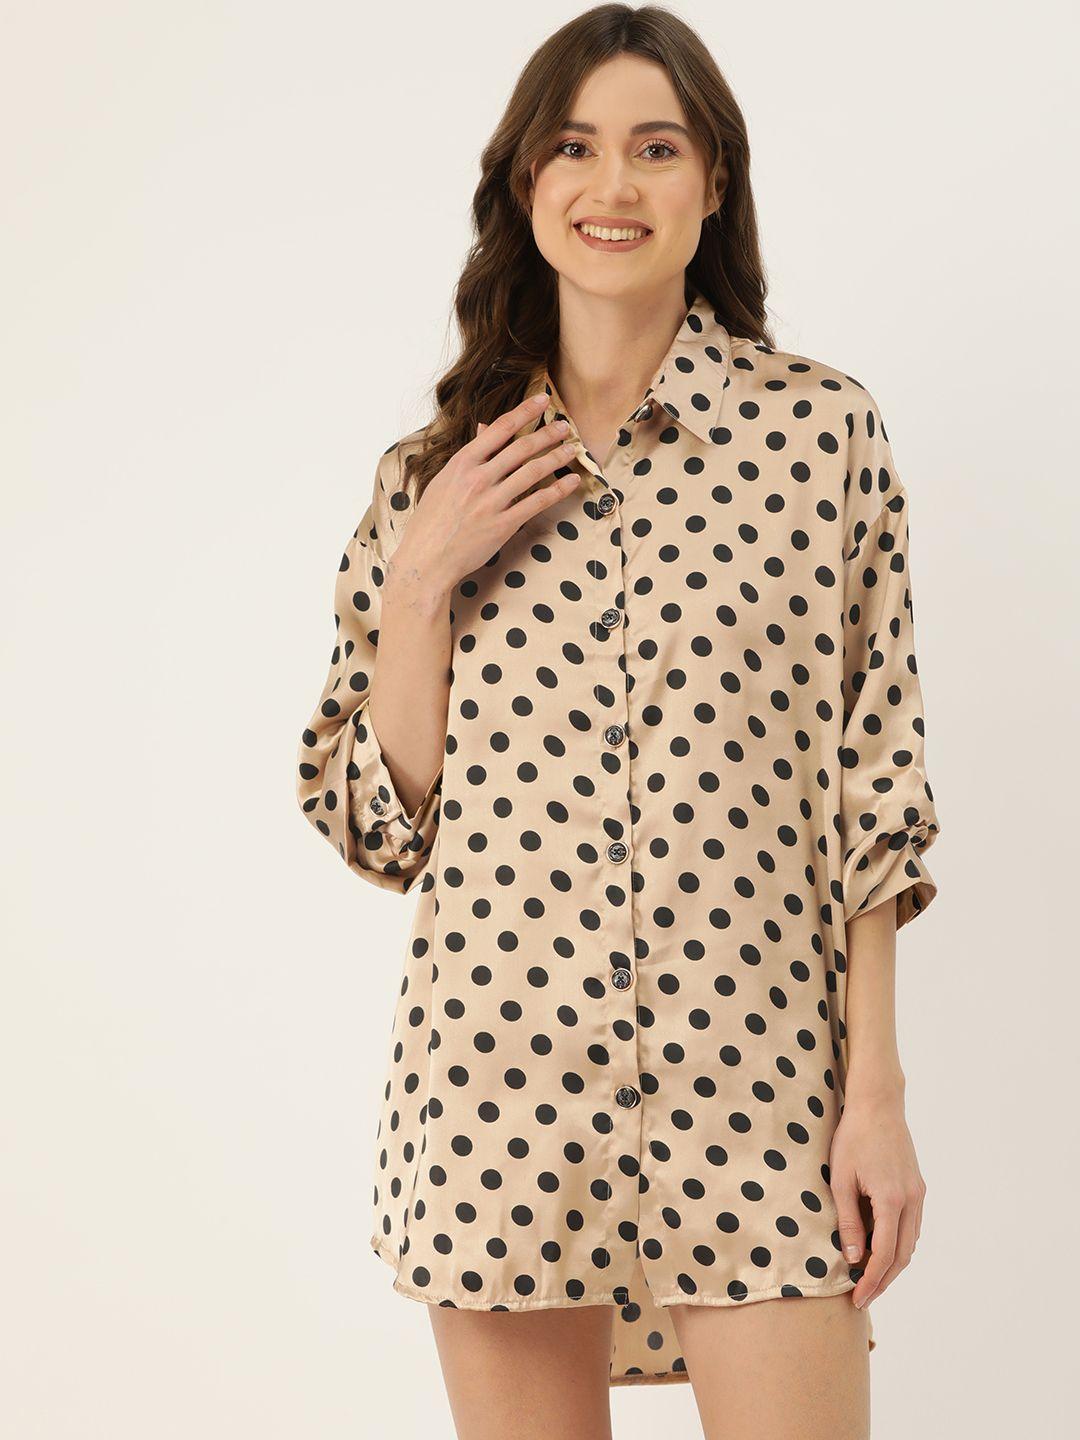 ms.lingies-polka-dots-printed-shirt-nightdress